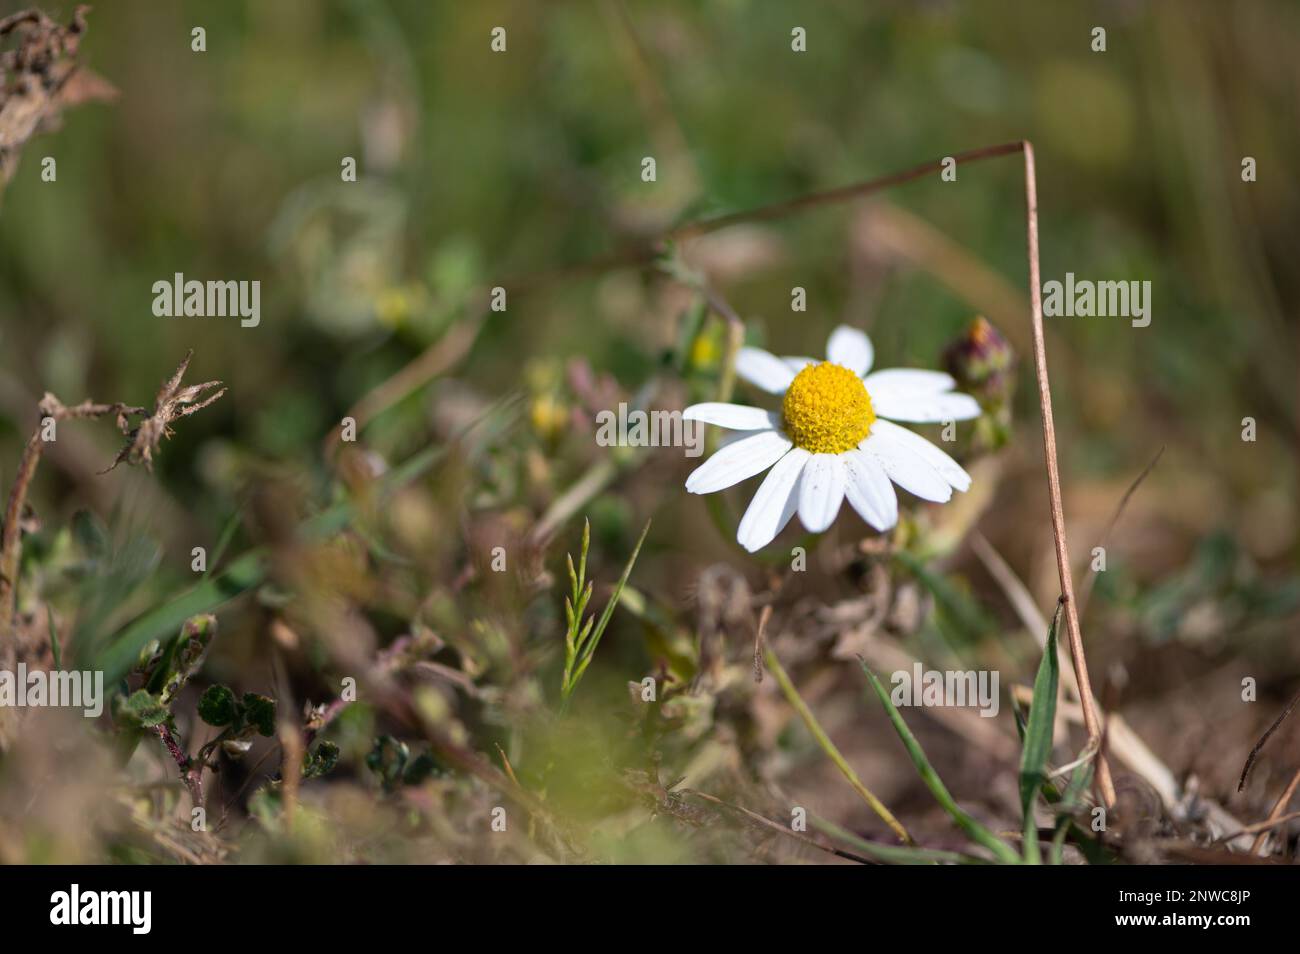 Gros plan sur une fleur de camomille sauvage sur un parterre d'herbe verte. Pétales blancs et coeur jaune. Foto Stock